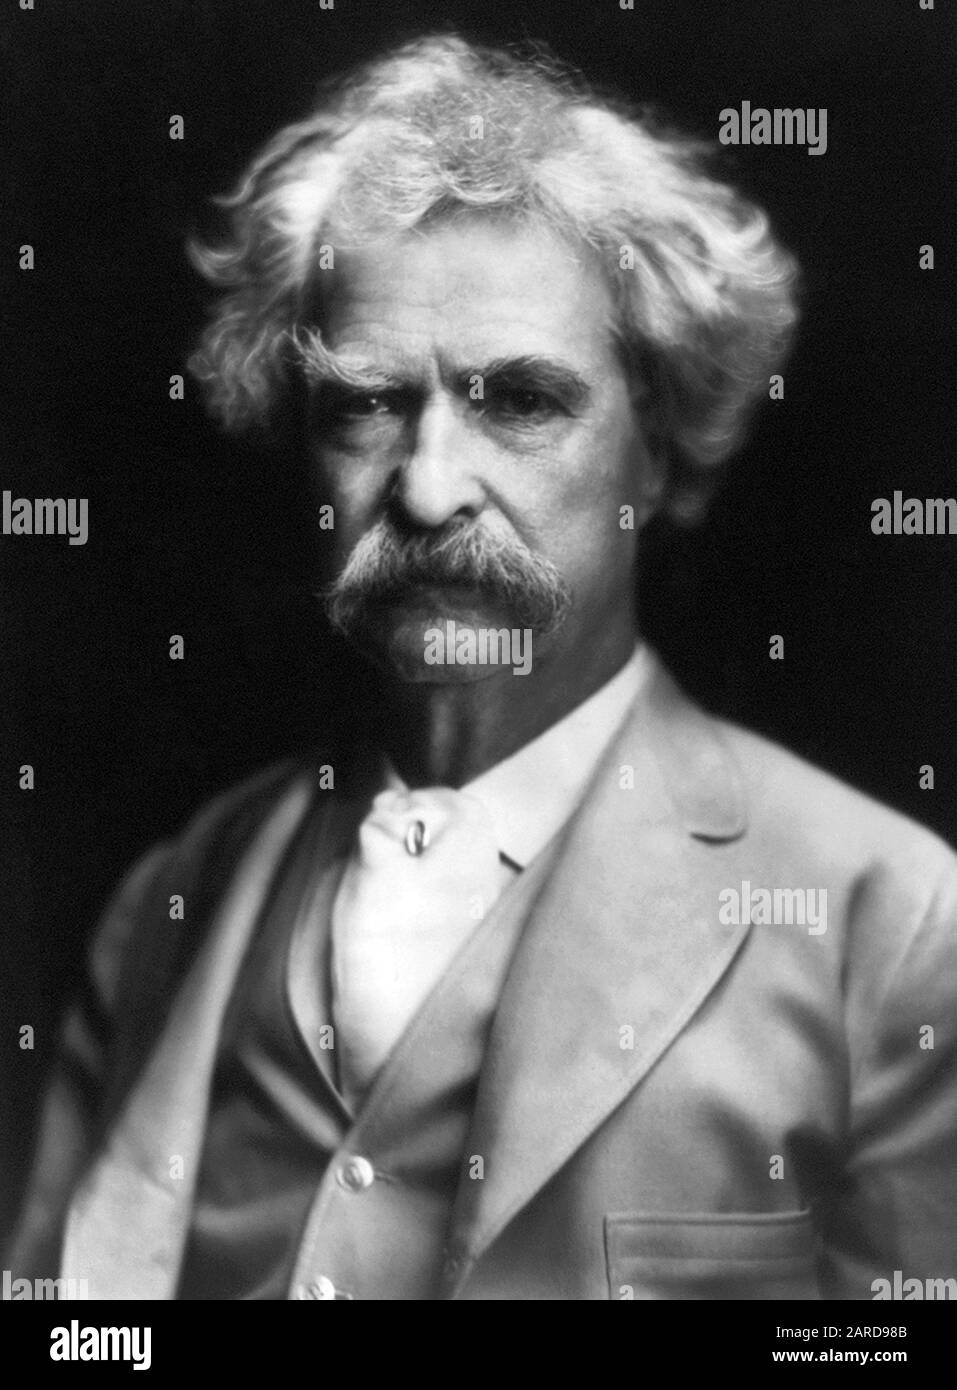 Ritratto d'epoca di scrittore americano e umorista Samuel Langhorne Clemens (1835 – 1910), meglio conosciuto dal suo nome di penna di Mark Twain. Foto circa 1907. Foto Stock